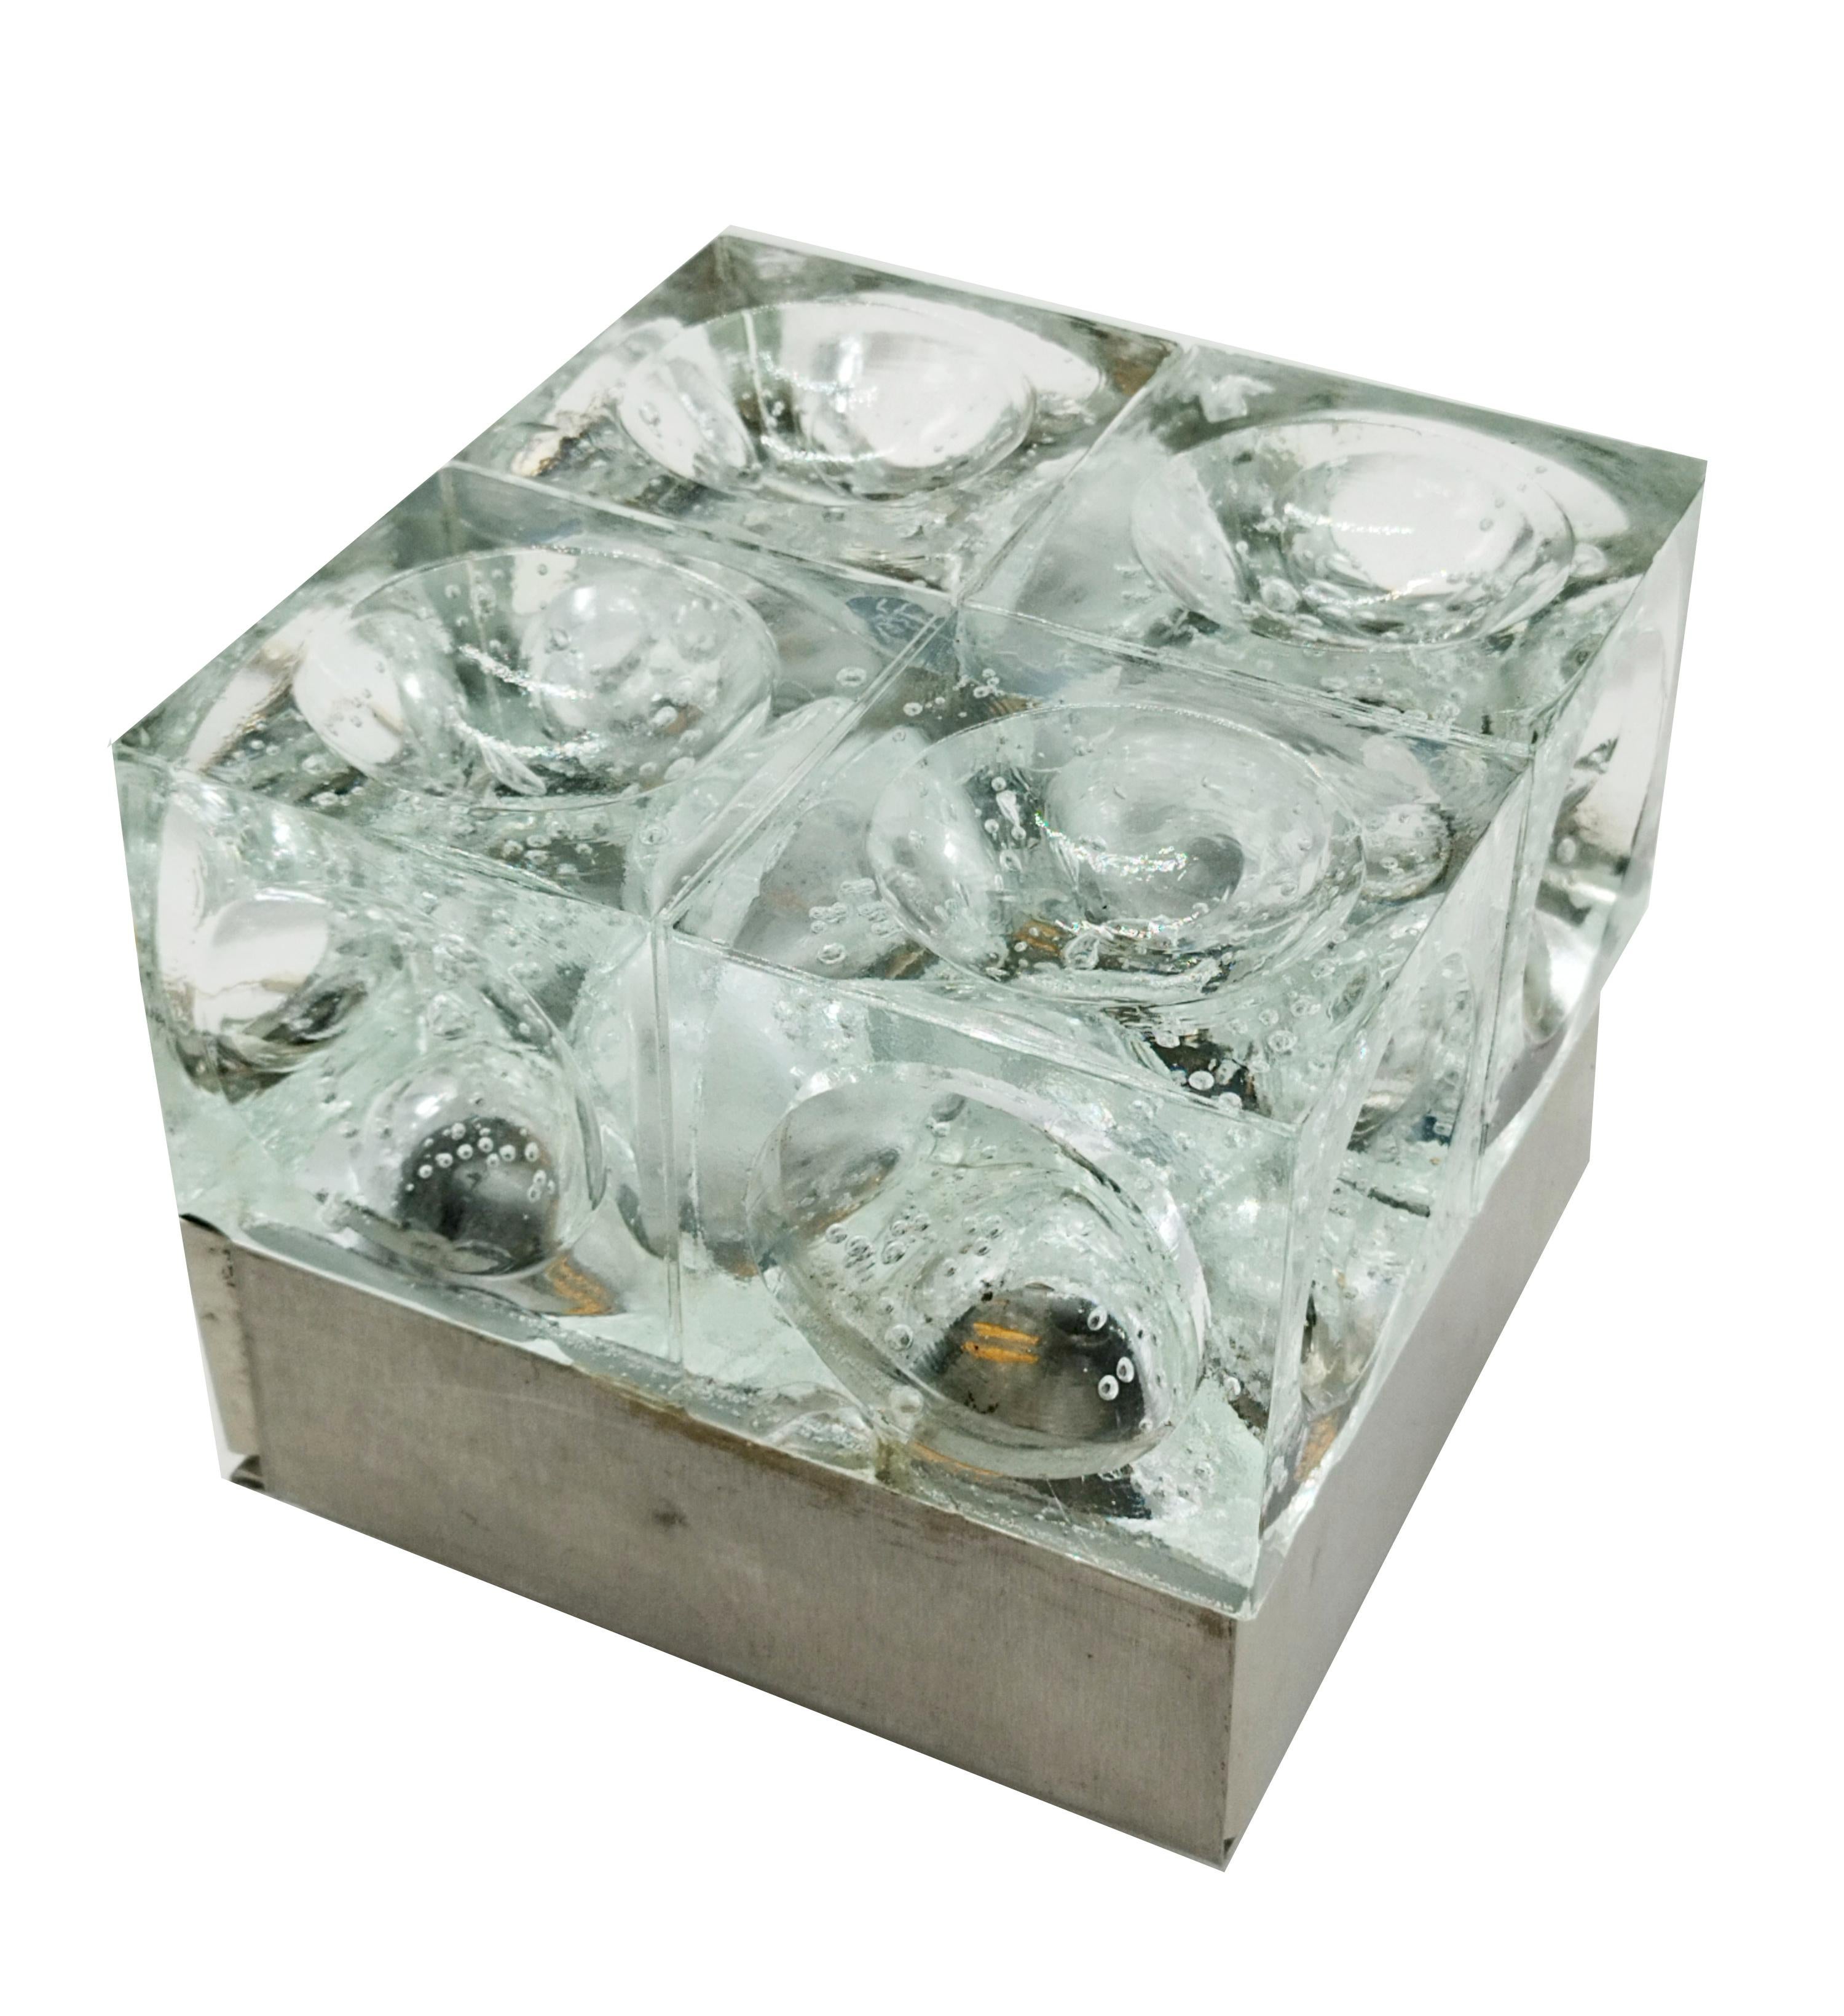 Table lamp cube bubble glass metal chrome base from the Poliarte manufacture. Famous Italian designs such as Aldo Carlo Nason for Mazzega, Venini, Vistosi, La Murrina, Toni Zuccheri for VeAr.